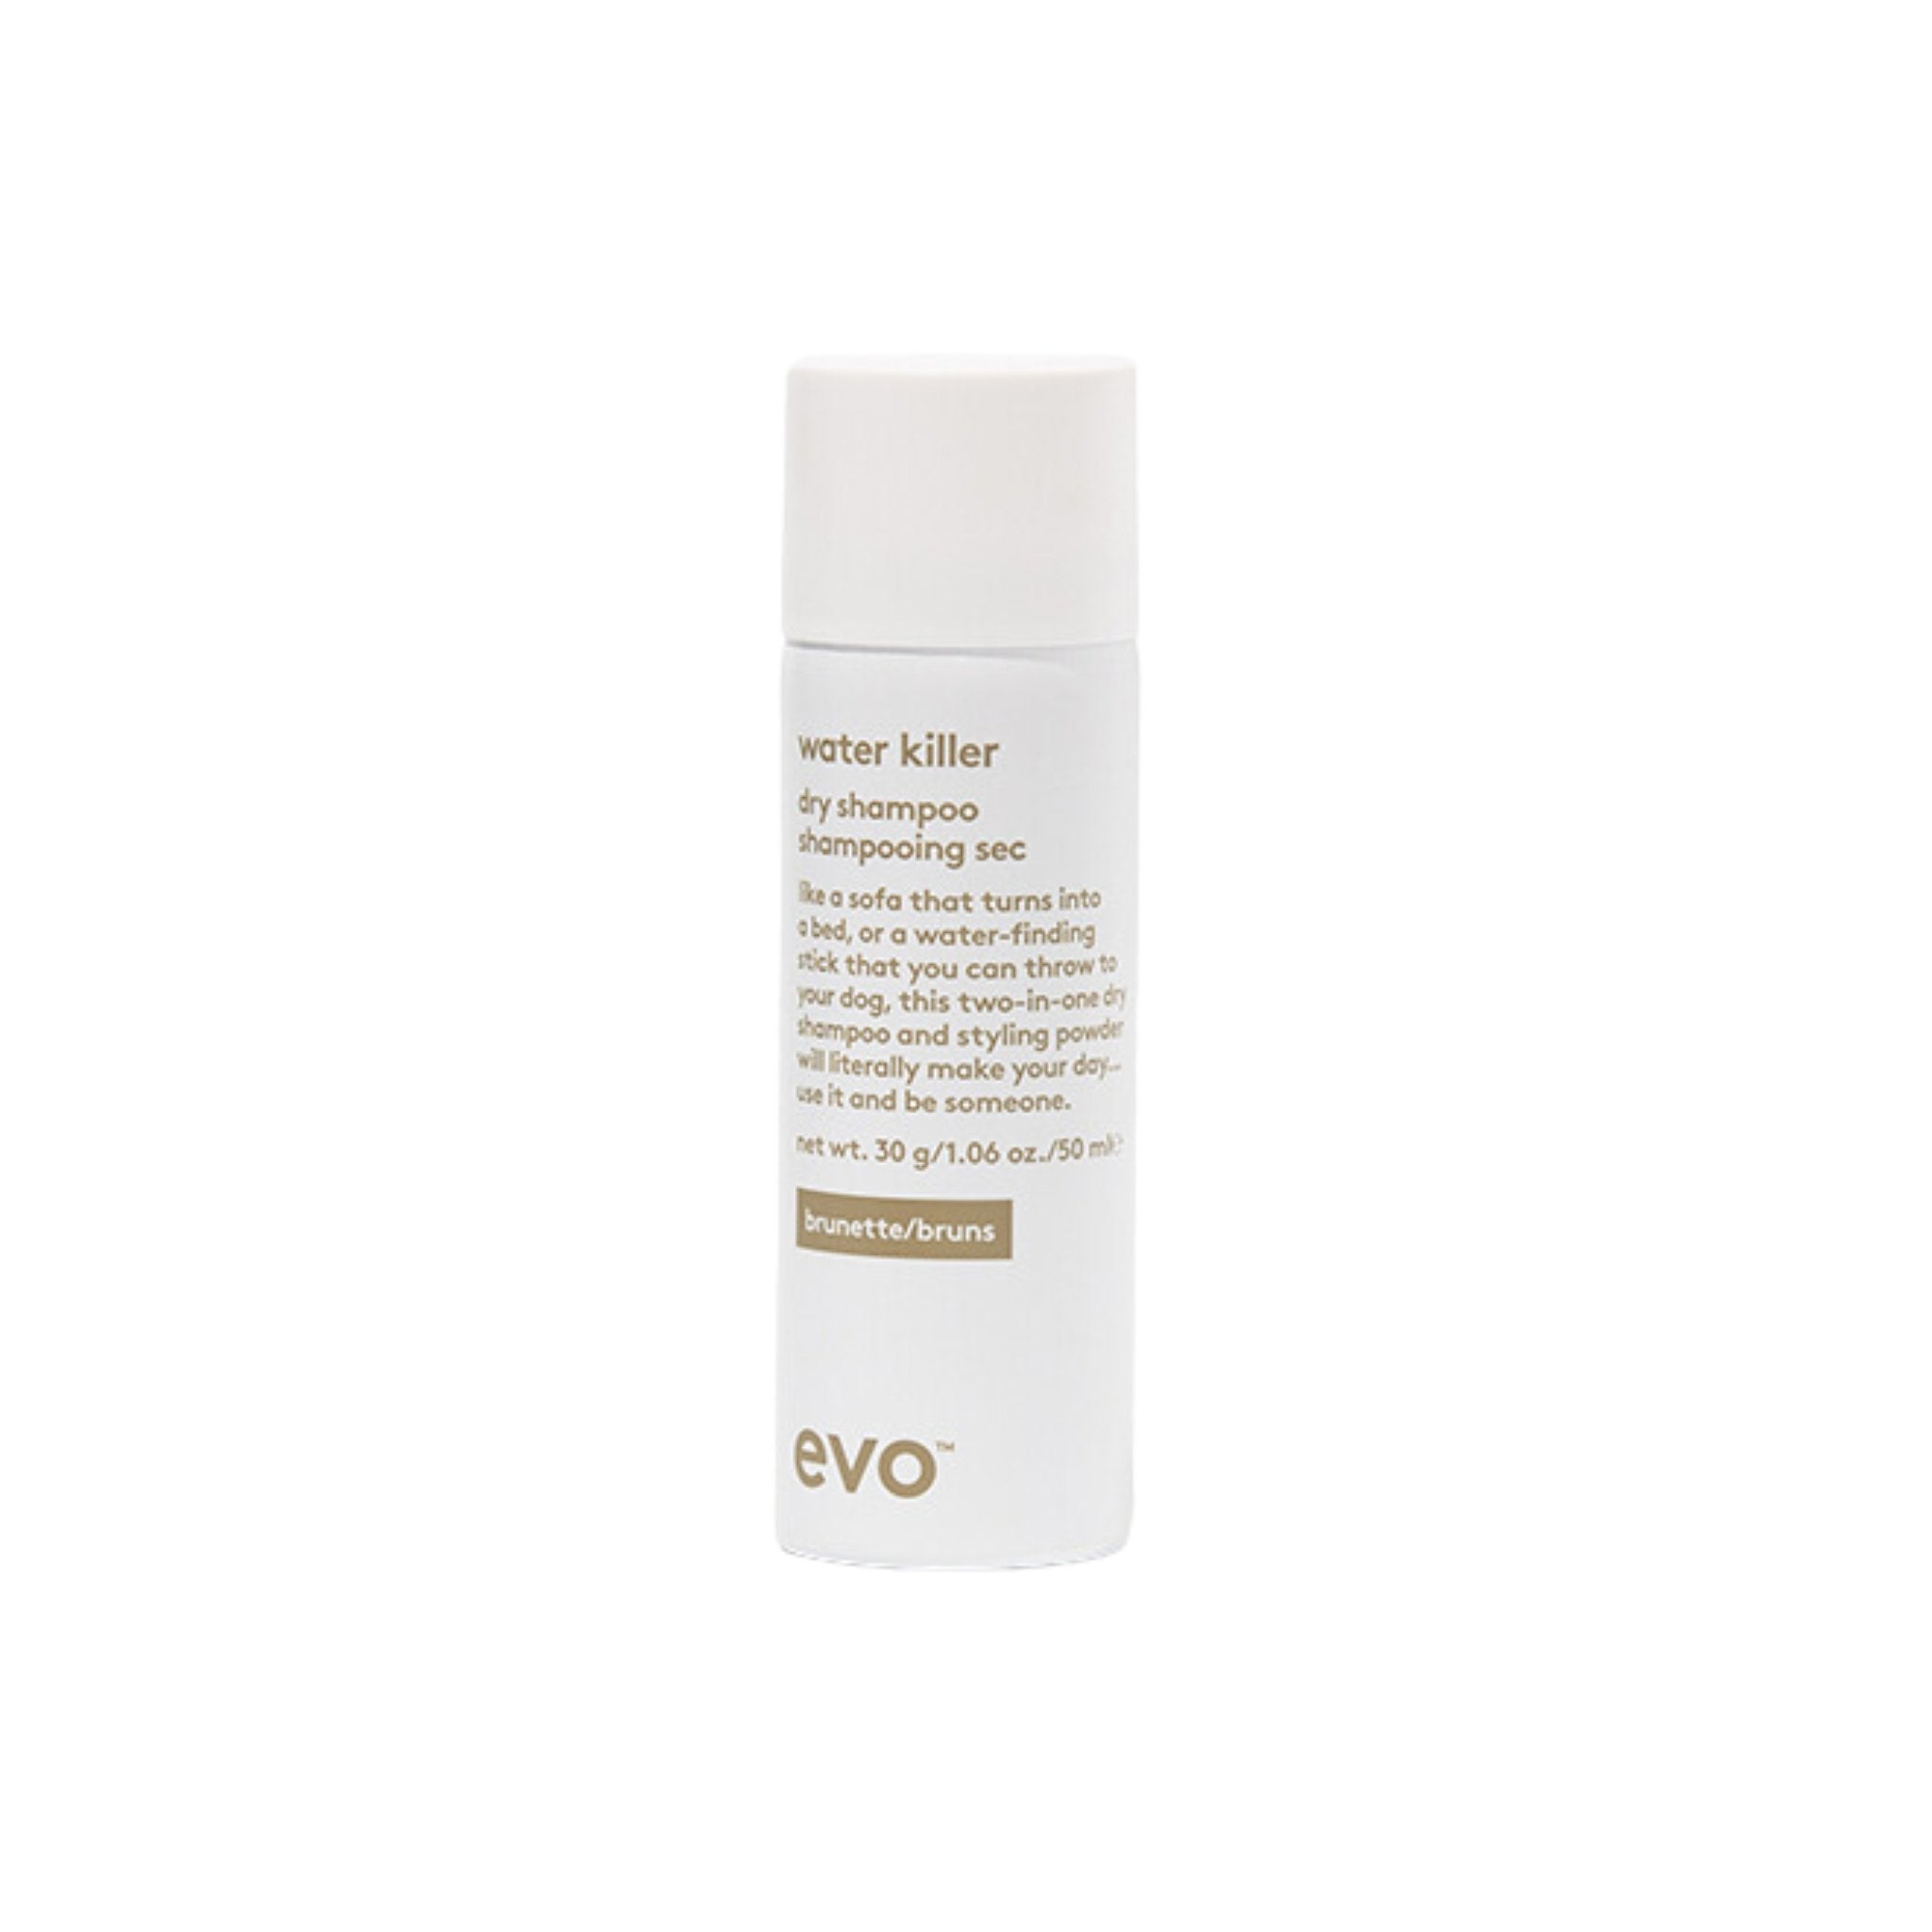 Evo. Water Killer Shampoing Sec Brunette - 50 ml - Concept C. Shop